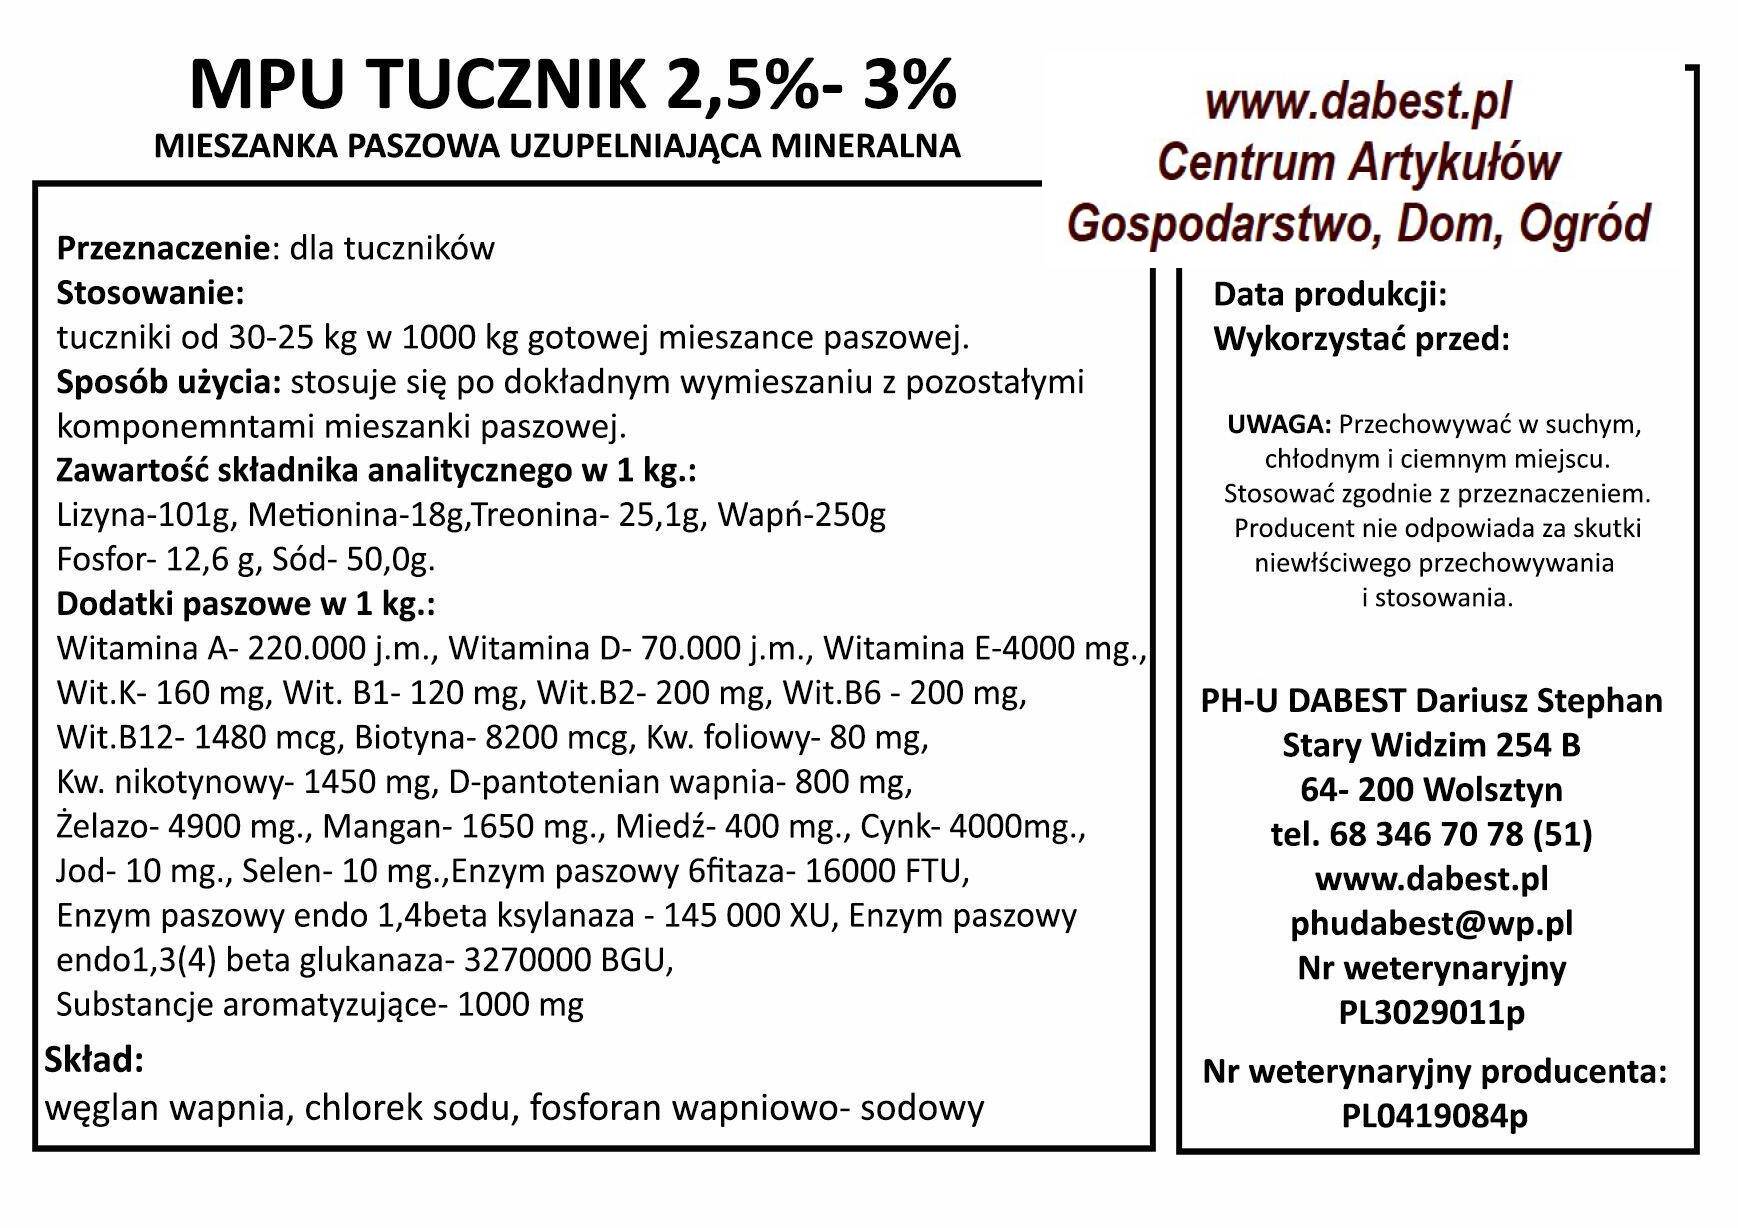 Walk.MPU Tucznik 3-2,5% op. 25kg premix